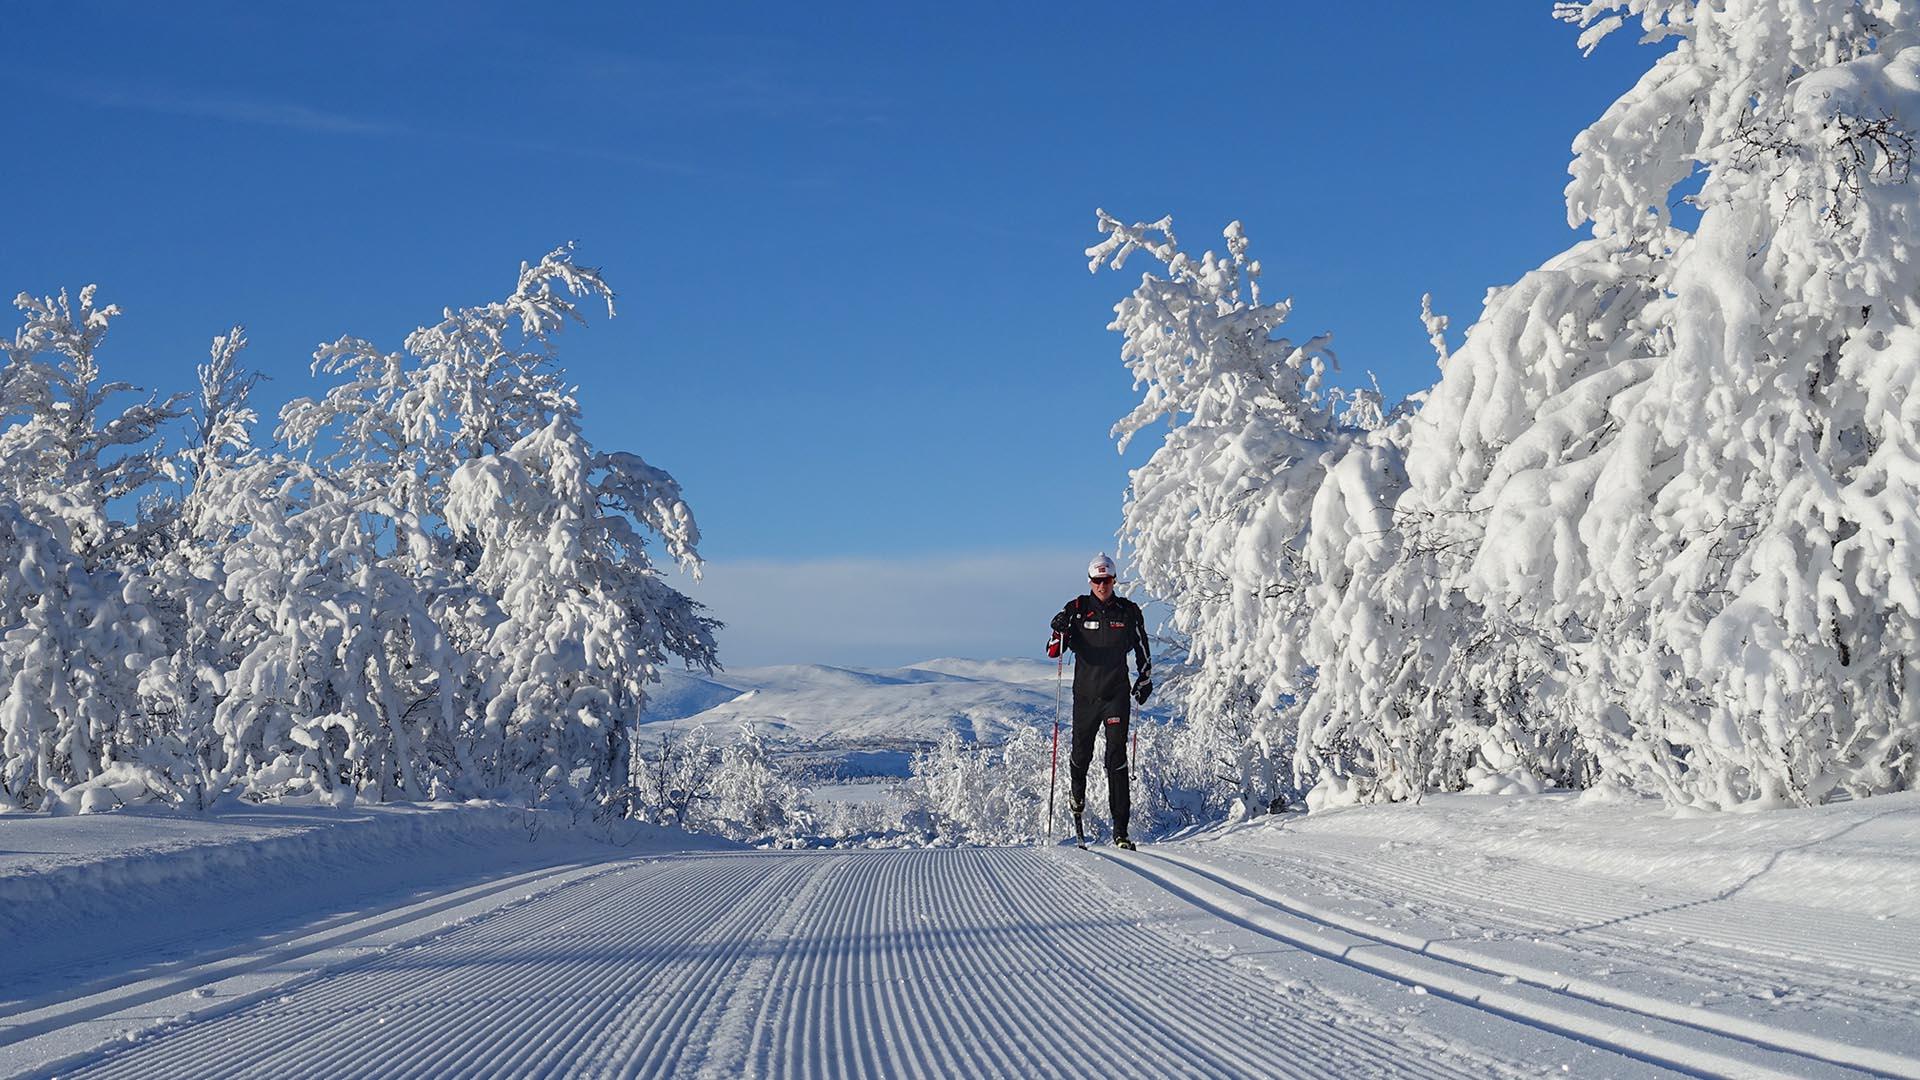 Mann på skitur mellom snødekte trær.